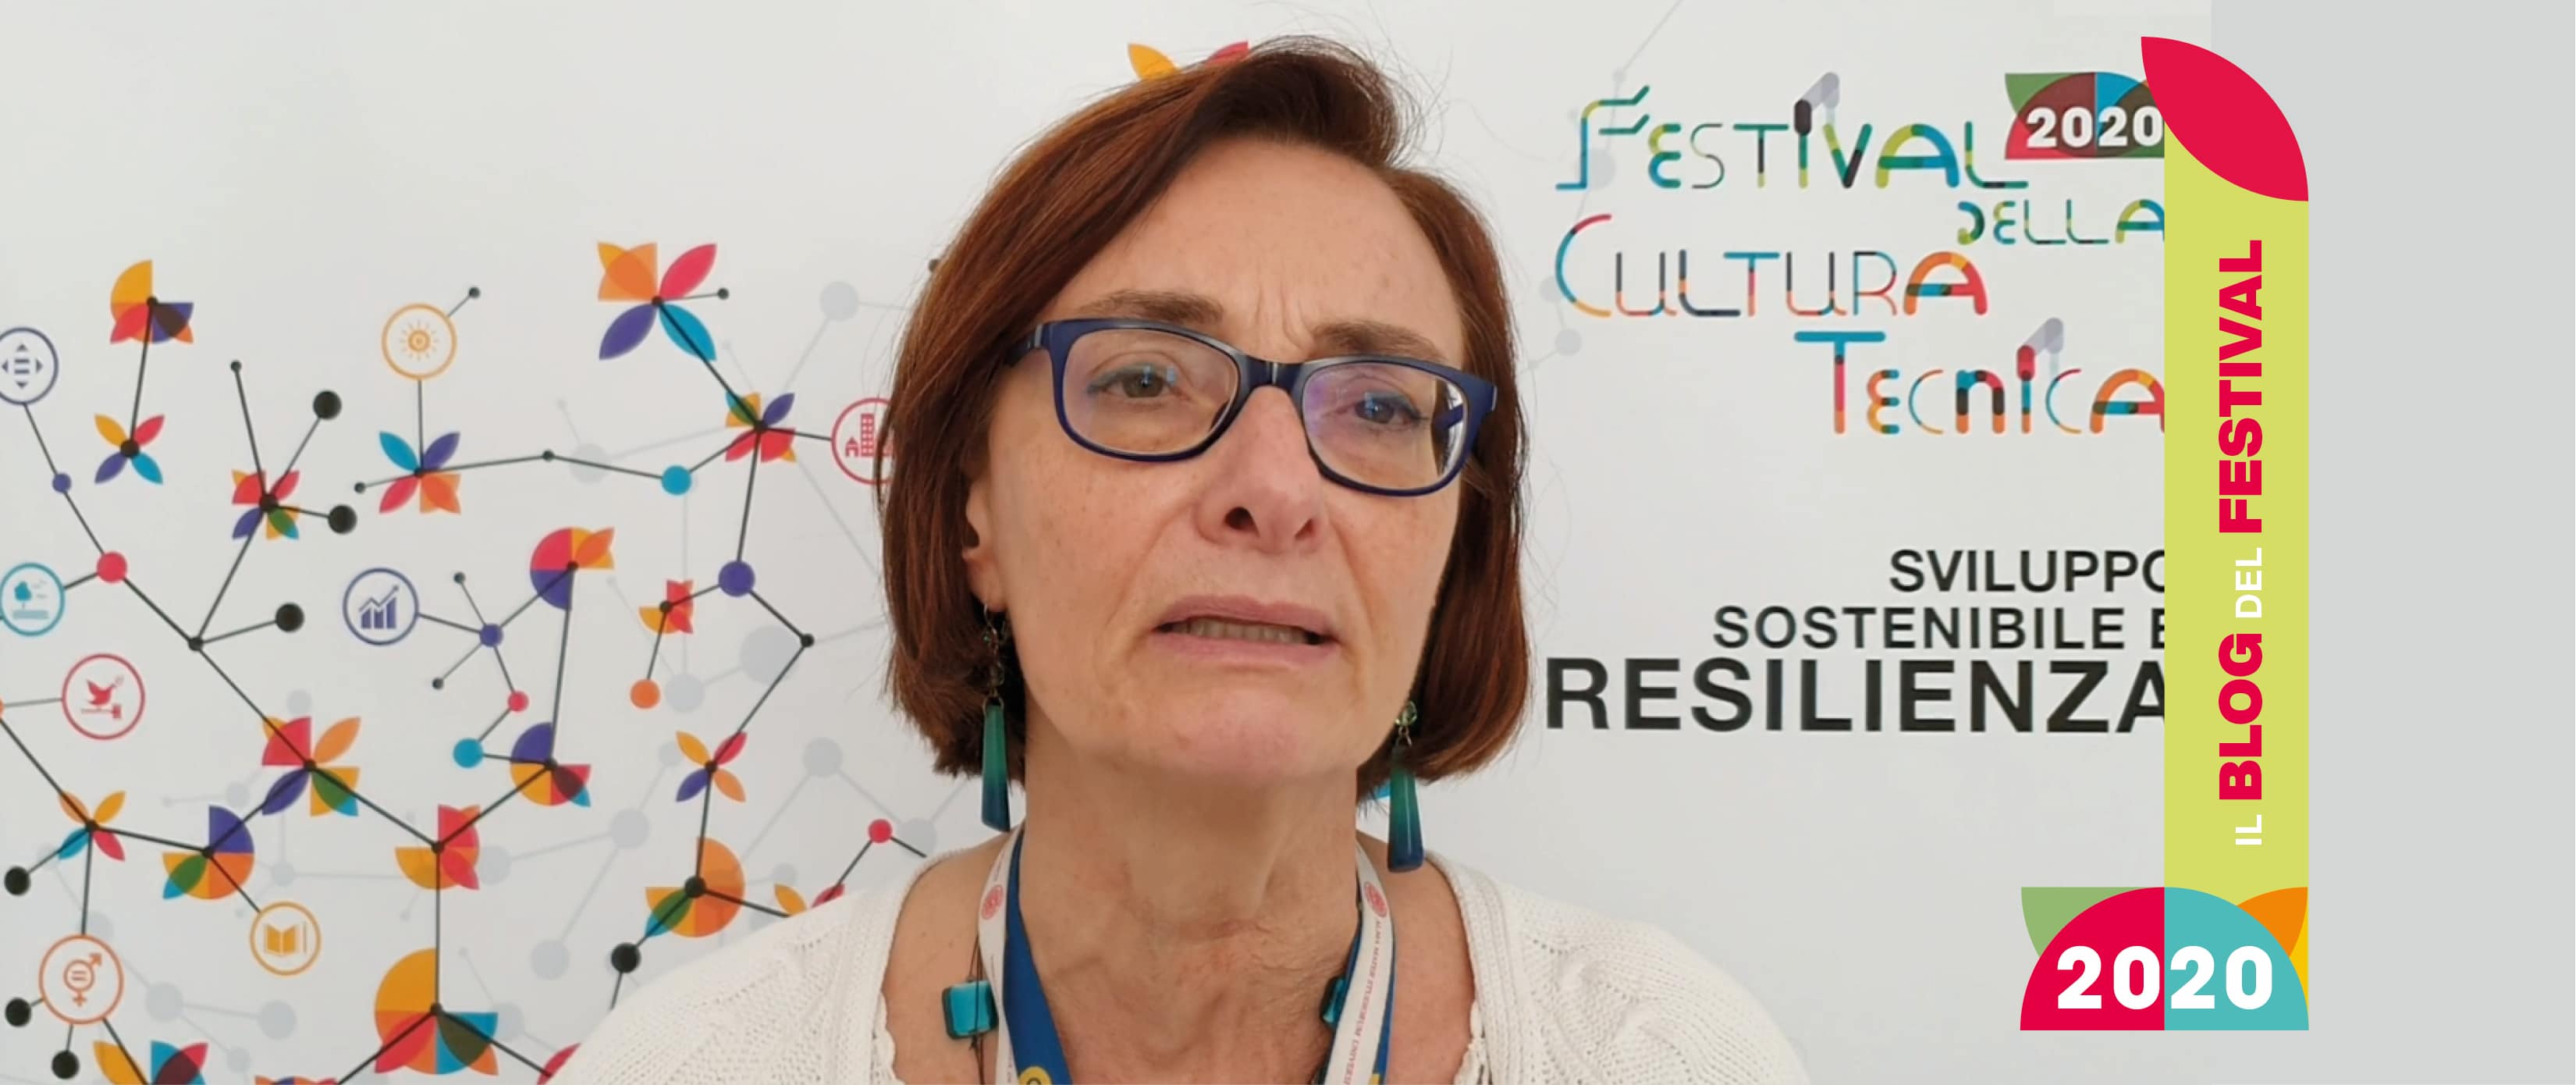 “PA sostenibile e resiliente”: il Festival della Cultura tecnica 2020 prende parte al contest video di ForumPA